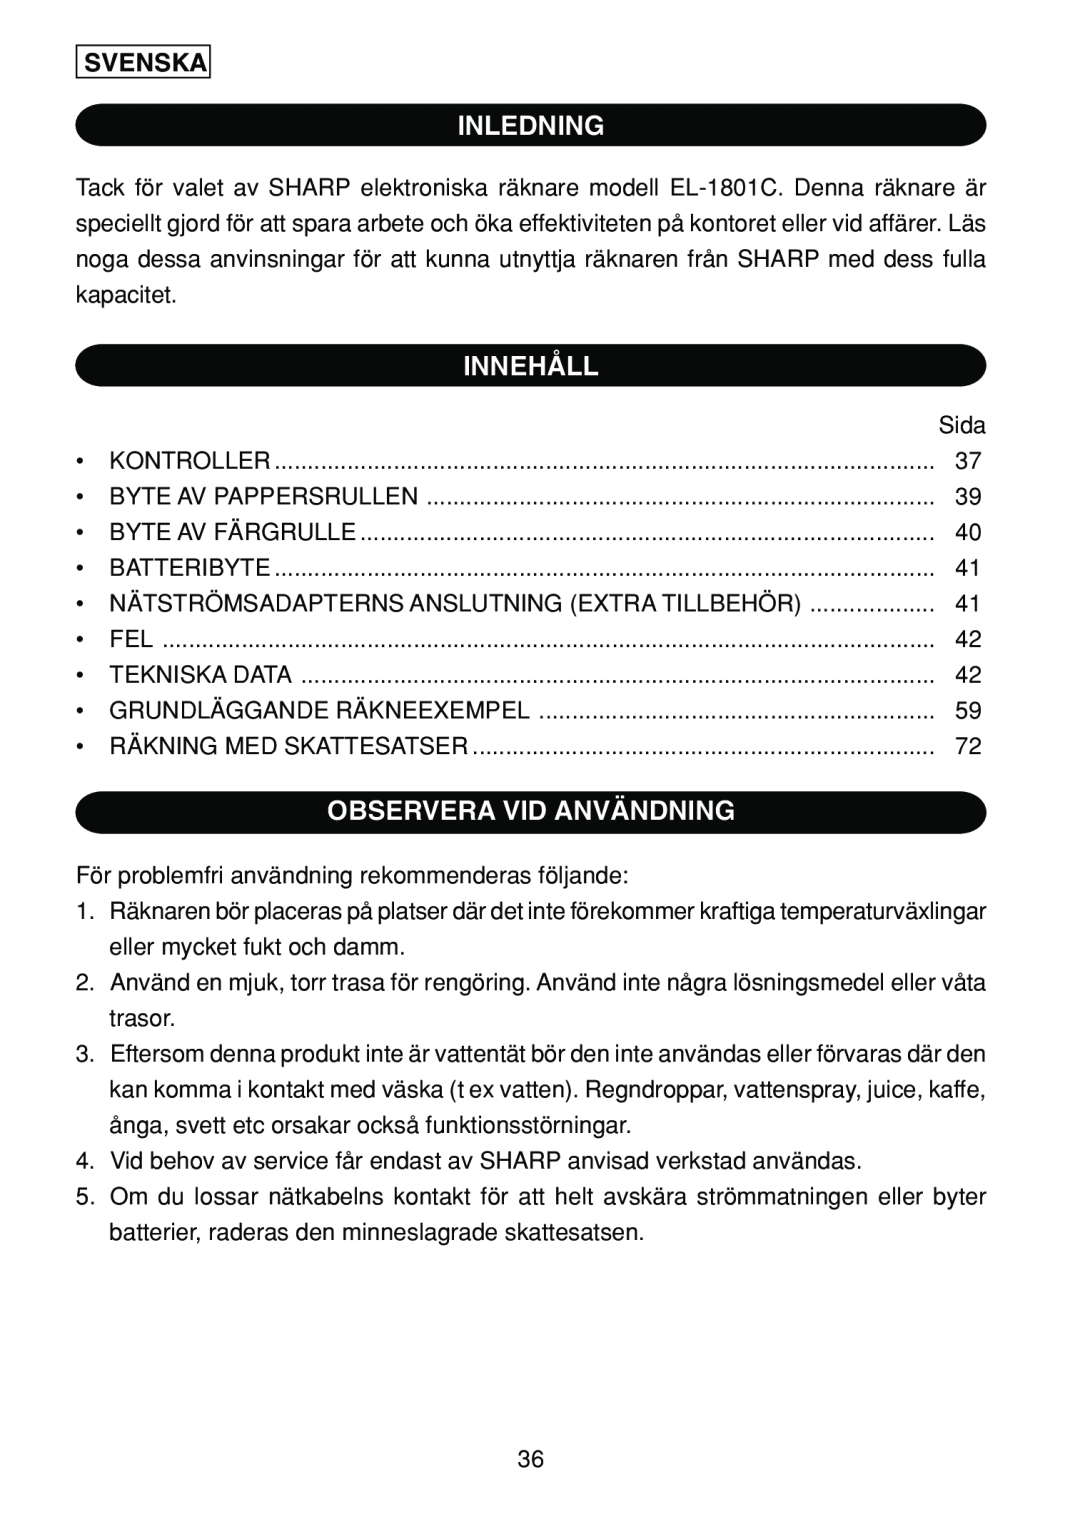 Sharp EL-1801C operation manual Inledning, Innehåll, Observera Vid Användning, Svenska 